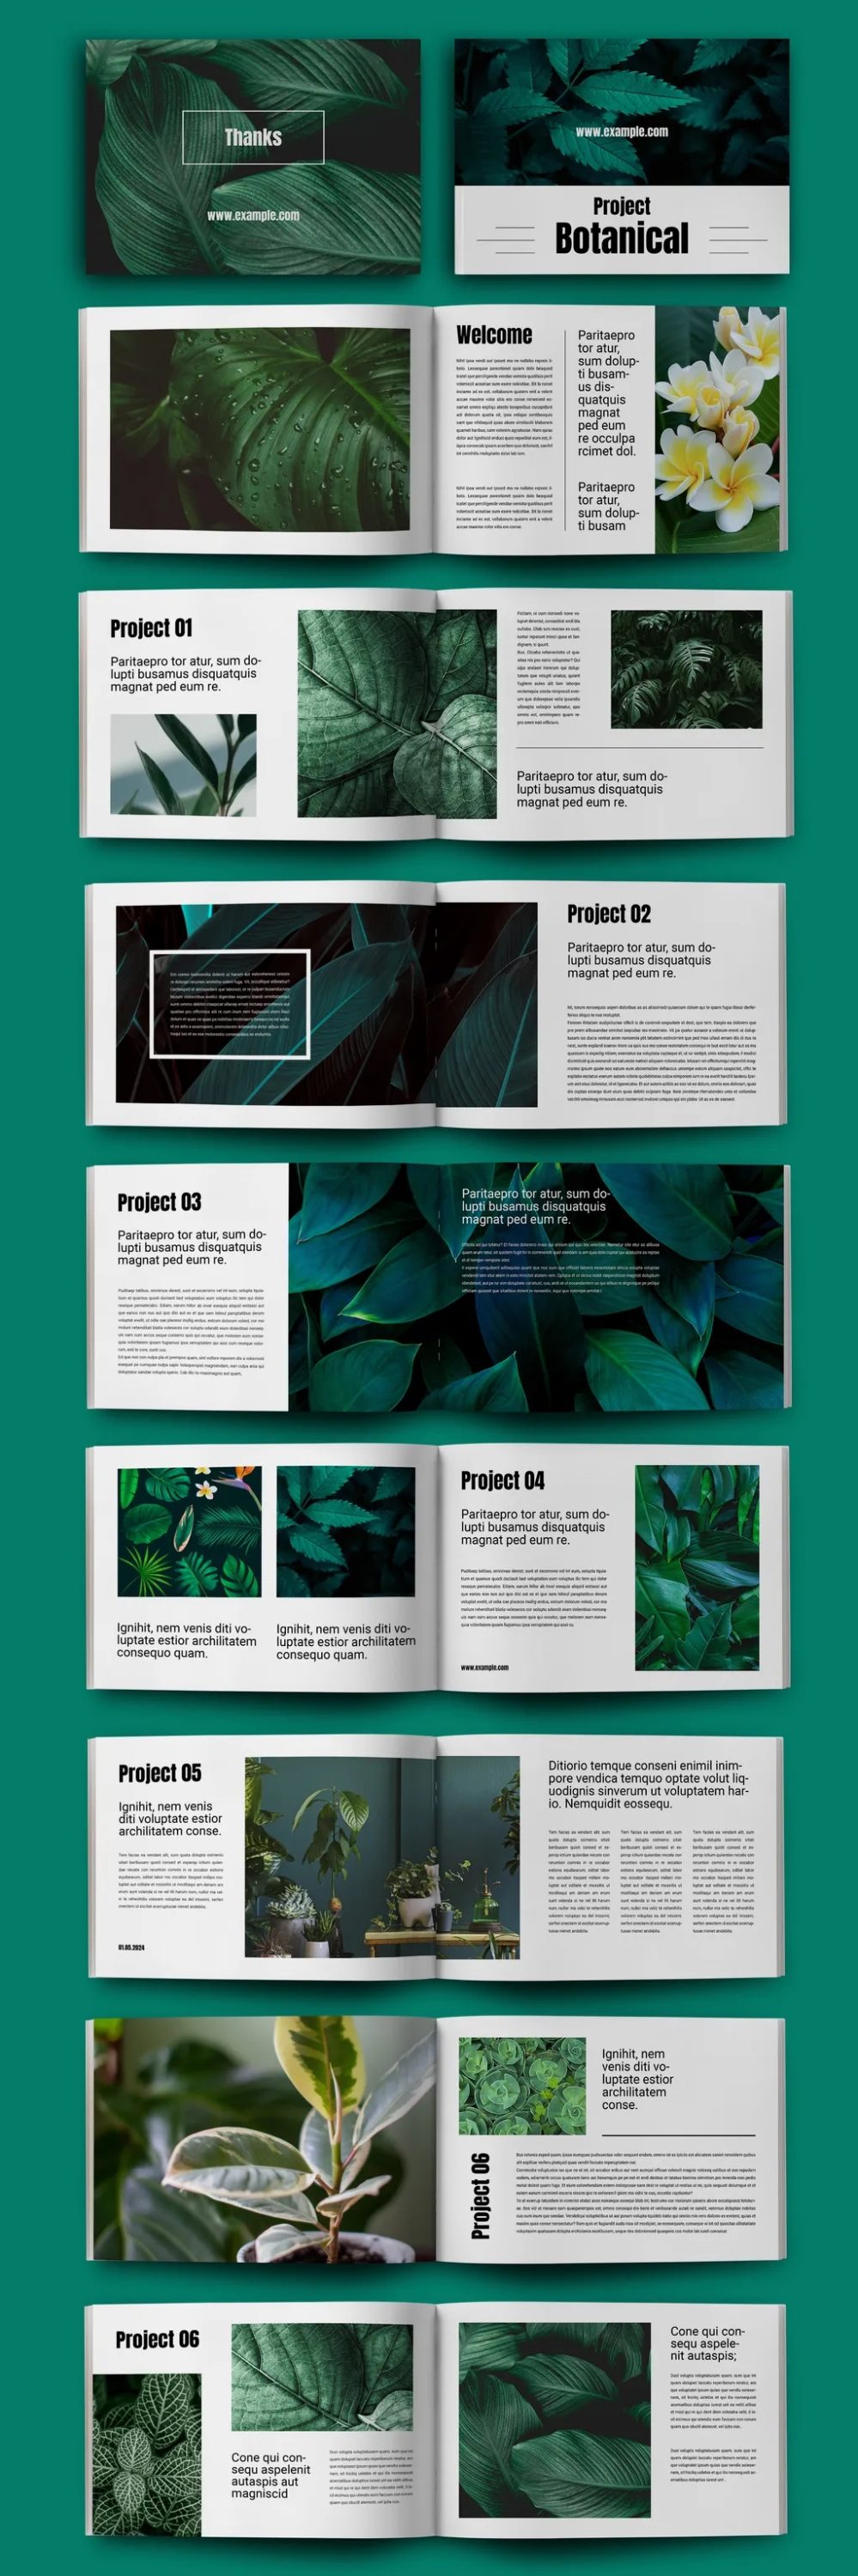 Adobestock - Botanical Magazine Layout 725230234